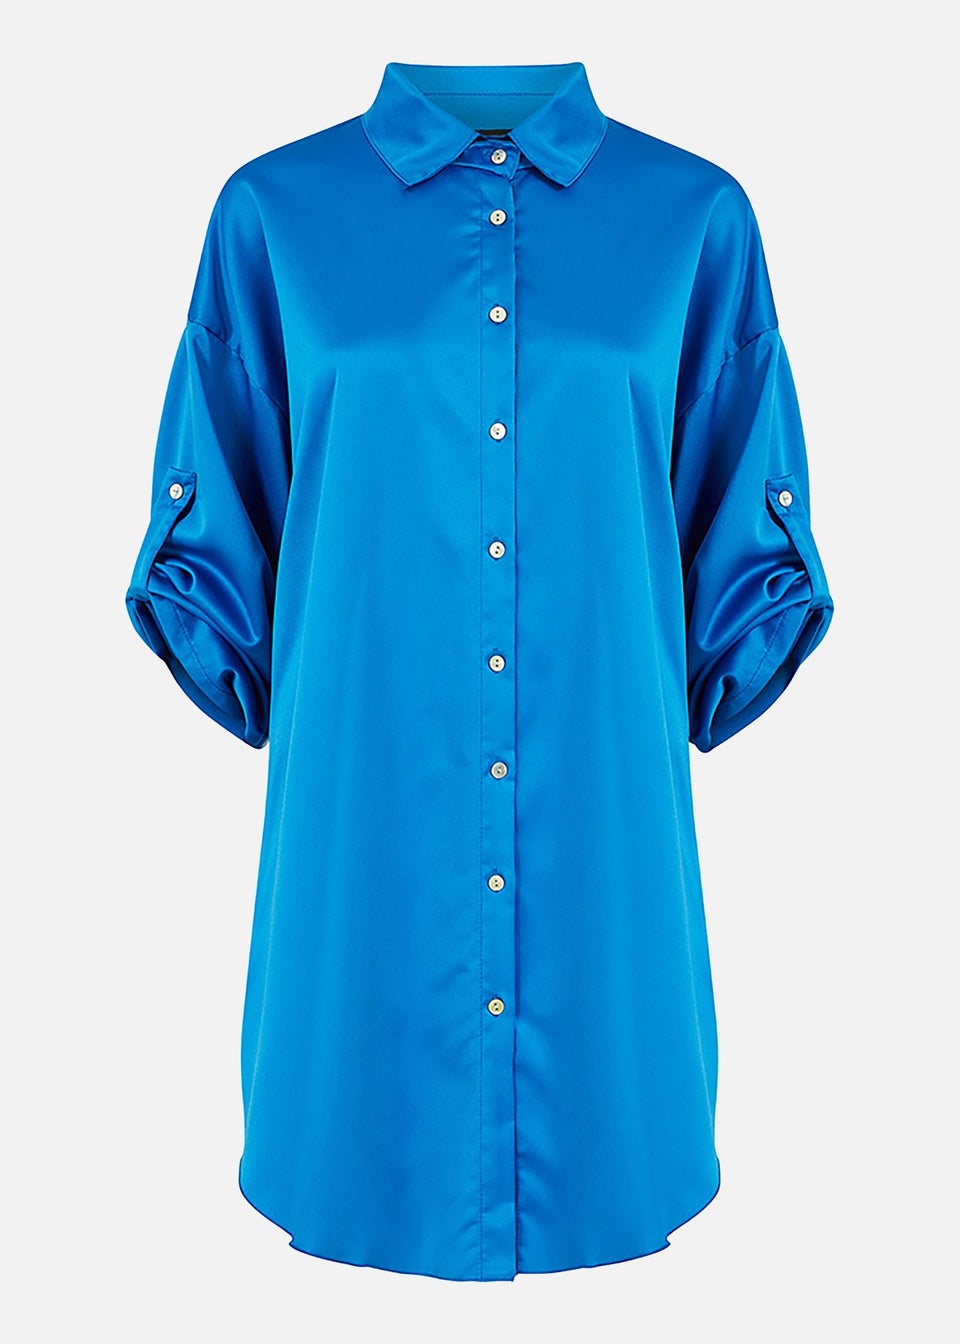 Mela Colbalt Blue Satin Relaxed Shirt Dress